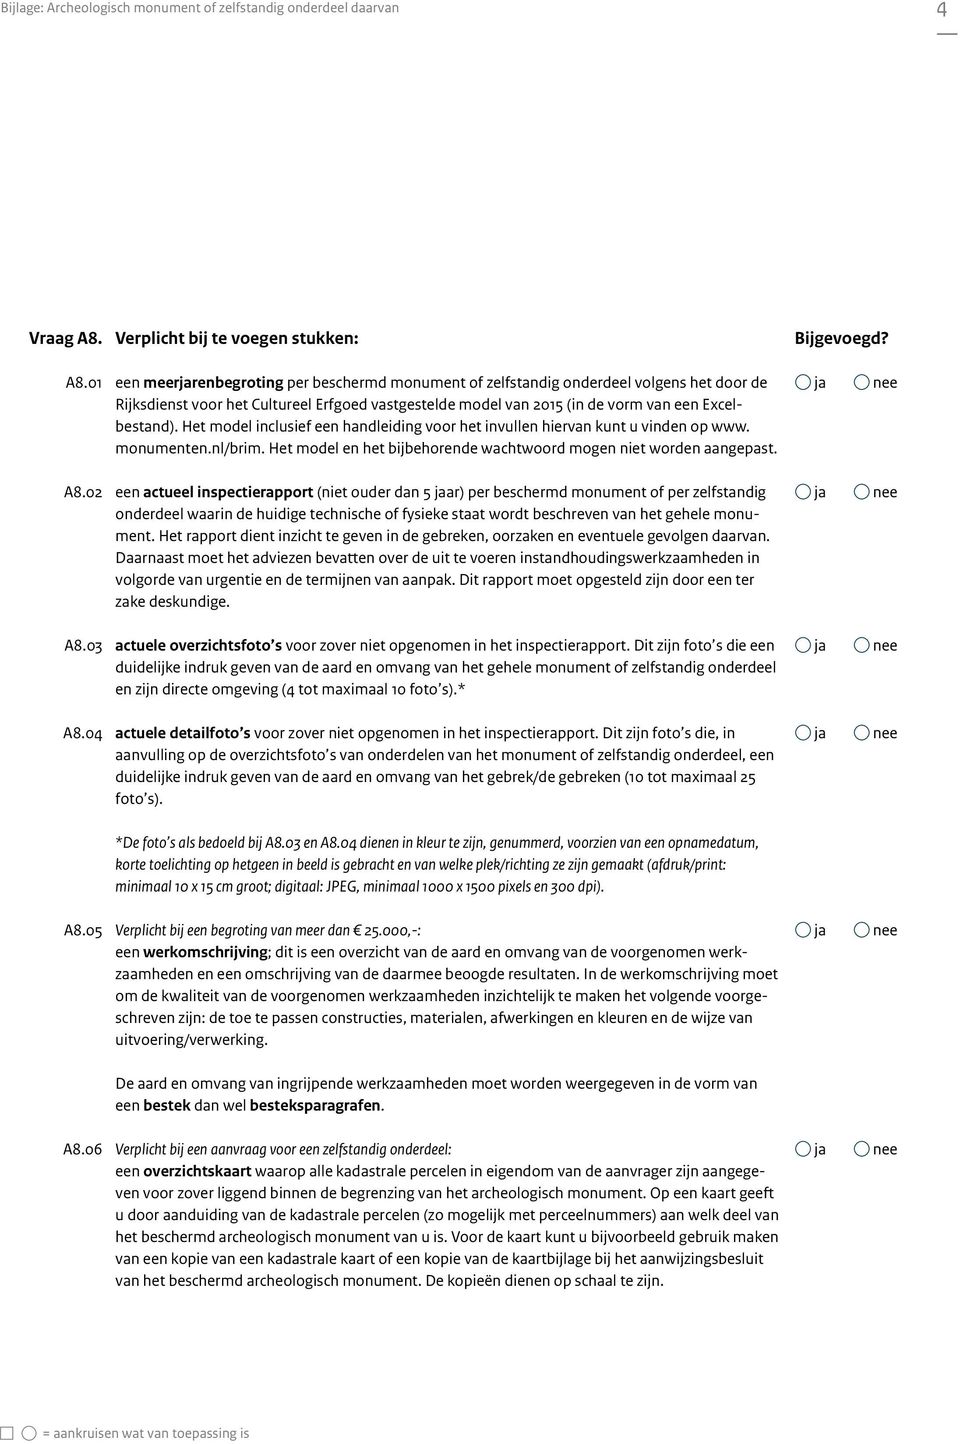 01 een meerrenbegroting per beschermd monument of zelfstandig onderdeel volgens het door de Rijksdienst voor het Cultureel Erfgoed vastgestelde model van 2015 (in de vorm van een Excelbestand).